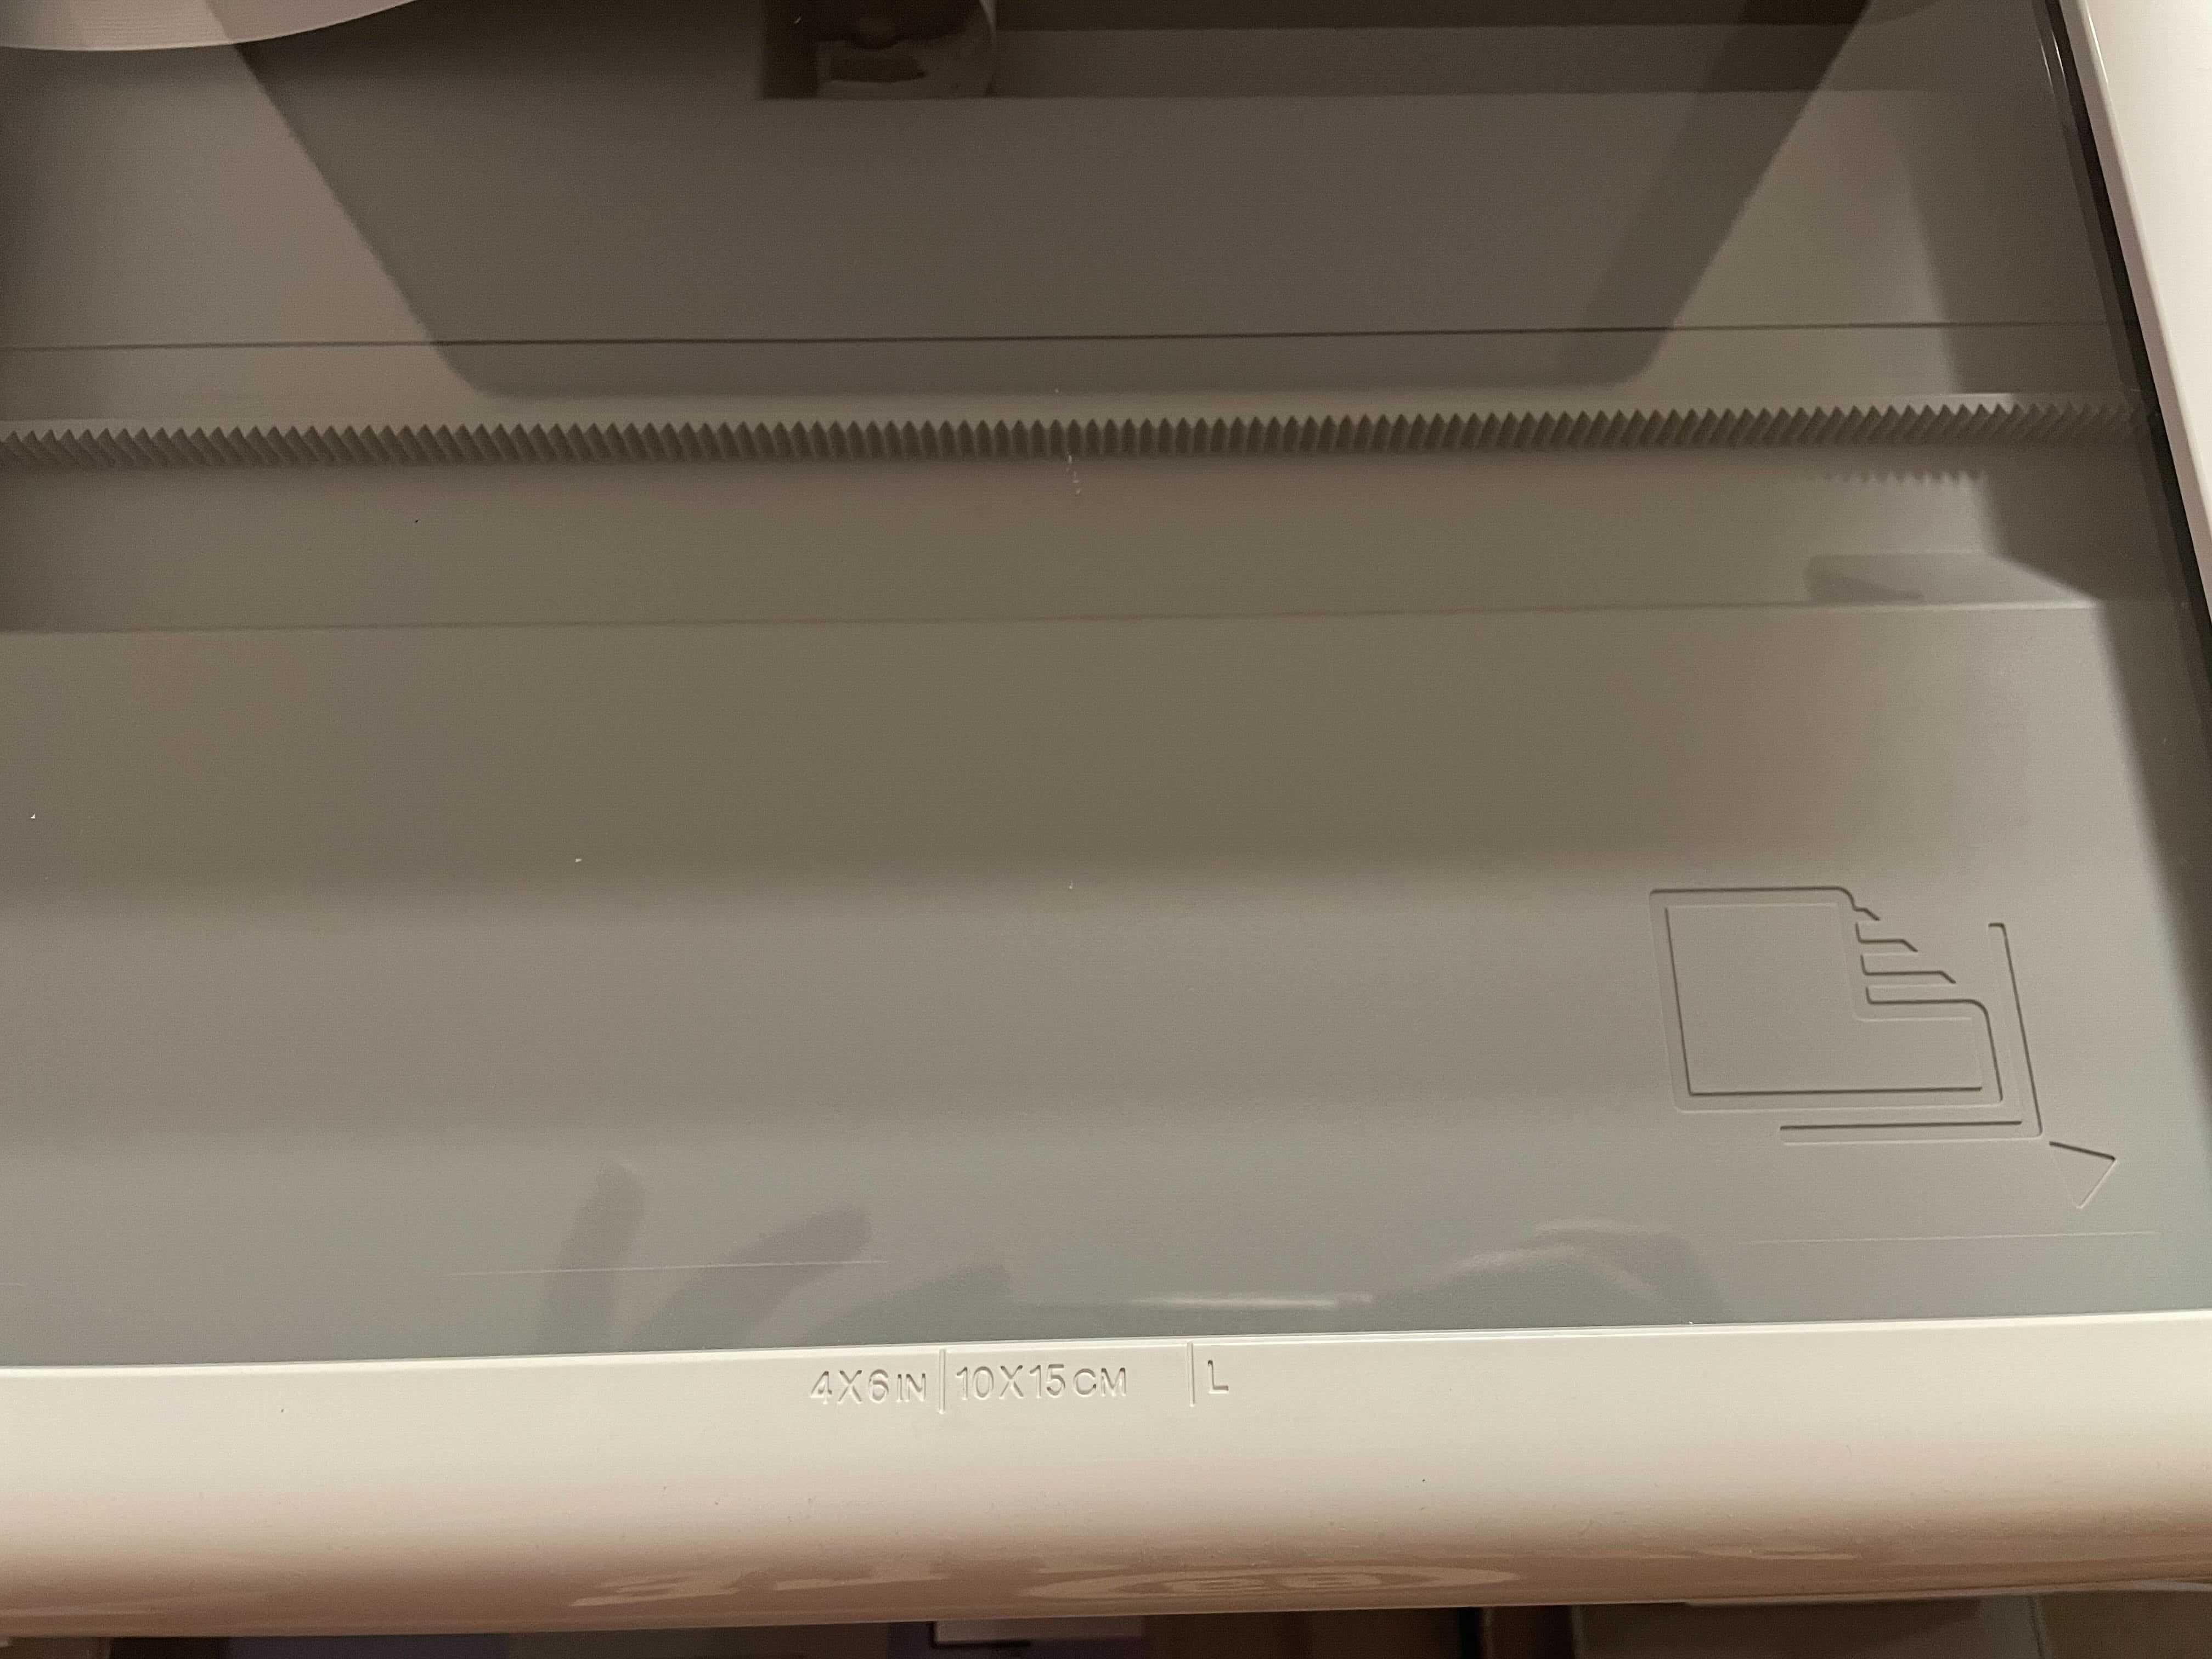 Imprimanta HP Smart C4280